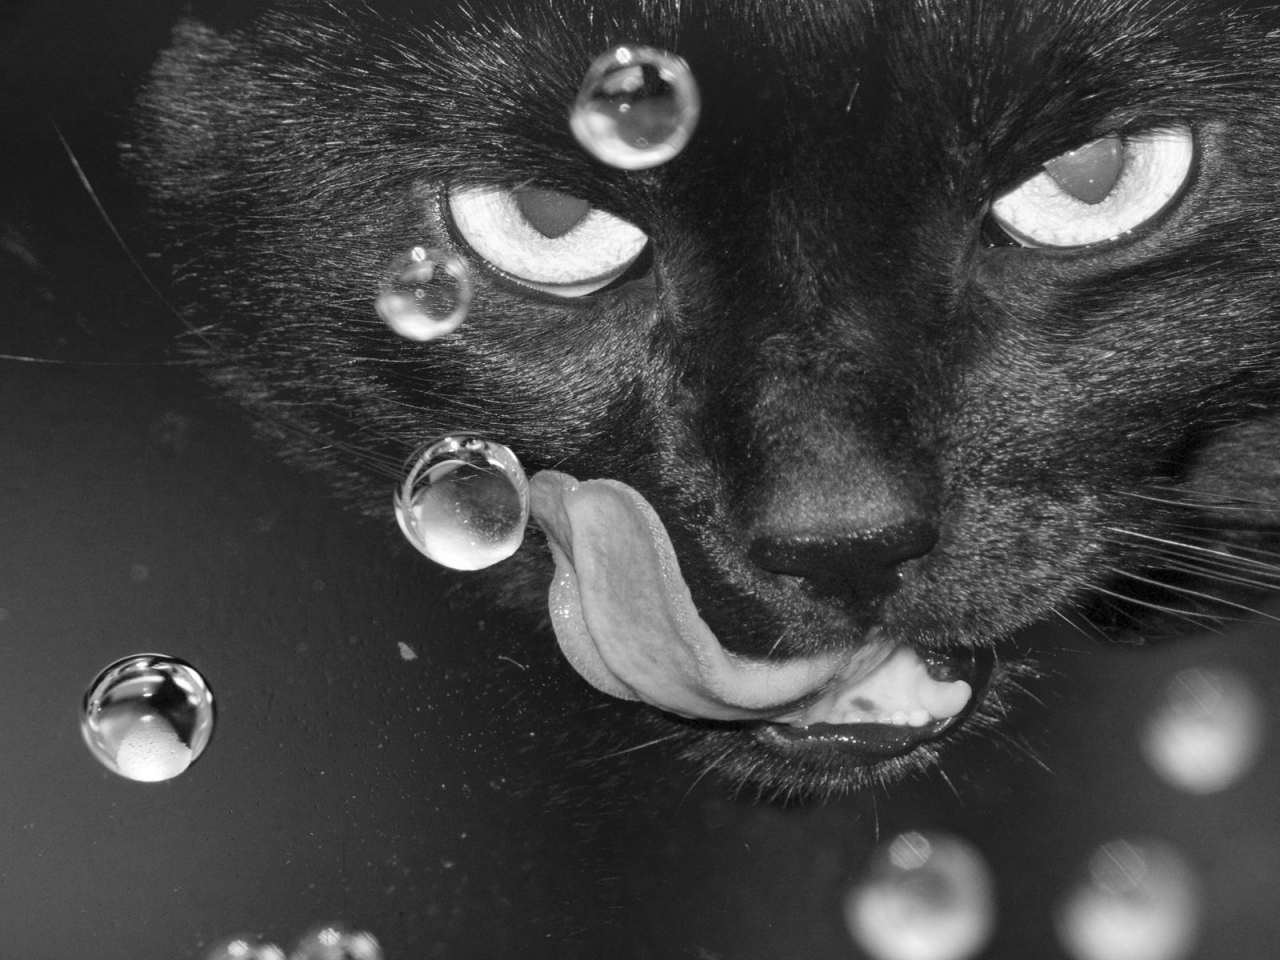 кот чёрный, взгляд